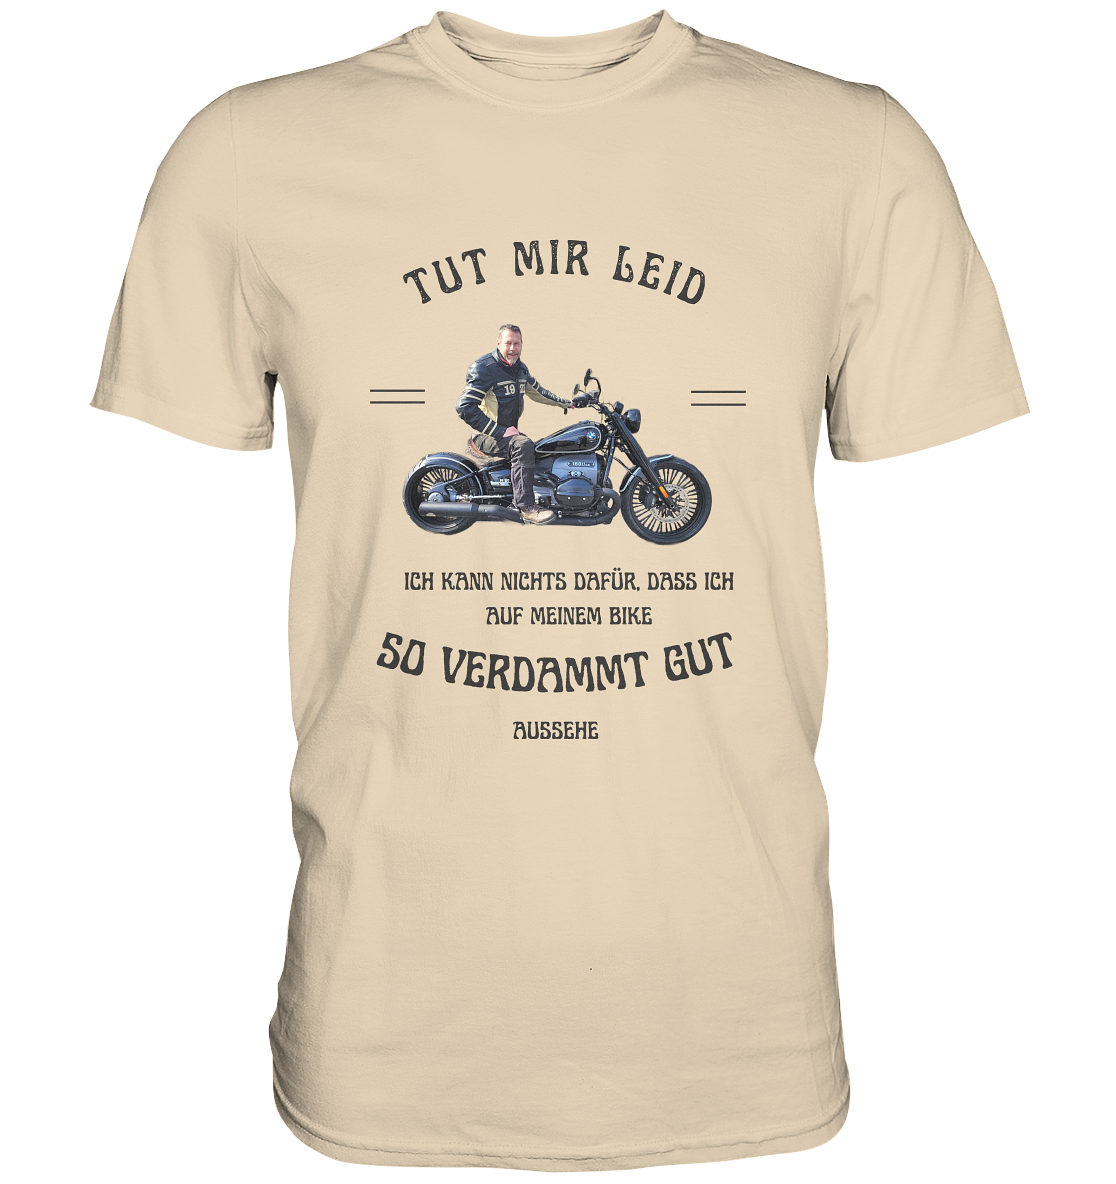 "Tut mir leid, ich kann nichts dafür, dass ich auf meinem Bike so verdammt gut aussehe" _ für Jürgen | individualisiertes Shirt mit personalisiertem Foto-Druck mit Motorrad-Spruch in dunklem Design